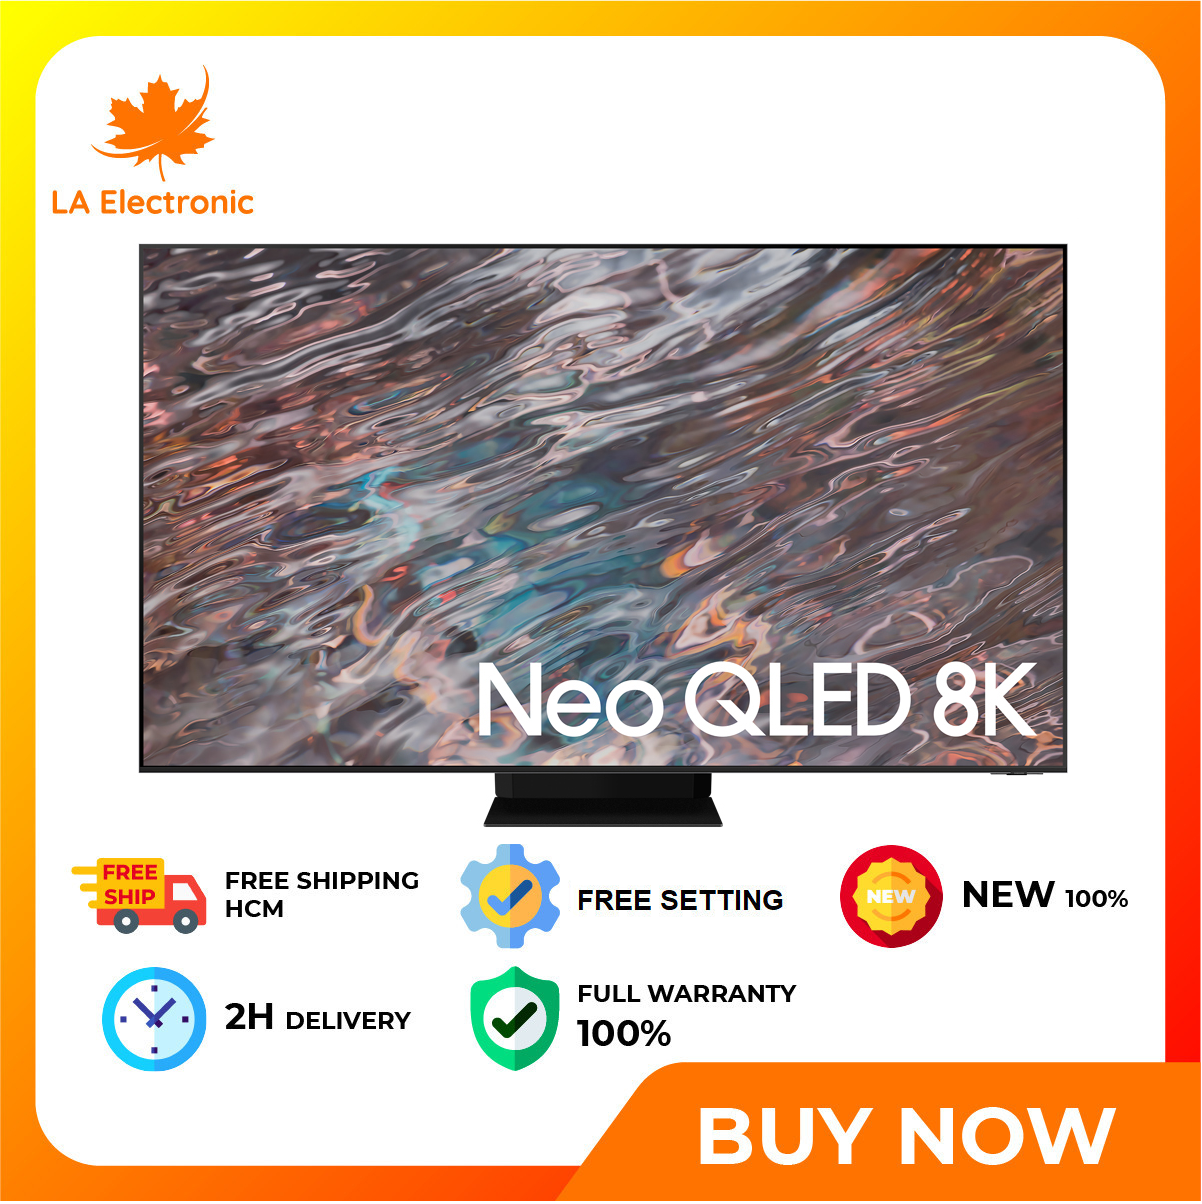 Smart Tivi Neo QLED 8K 75 inch Samsung QA75QN800A - Miễn phí vận chuyển HCM - Chế độ máy tính PC trên tiviMulti View chia nhỏ màn hình tivi Tìm kiếm giọng nói trên YouTube bằng tiếng Việt